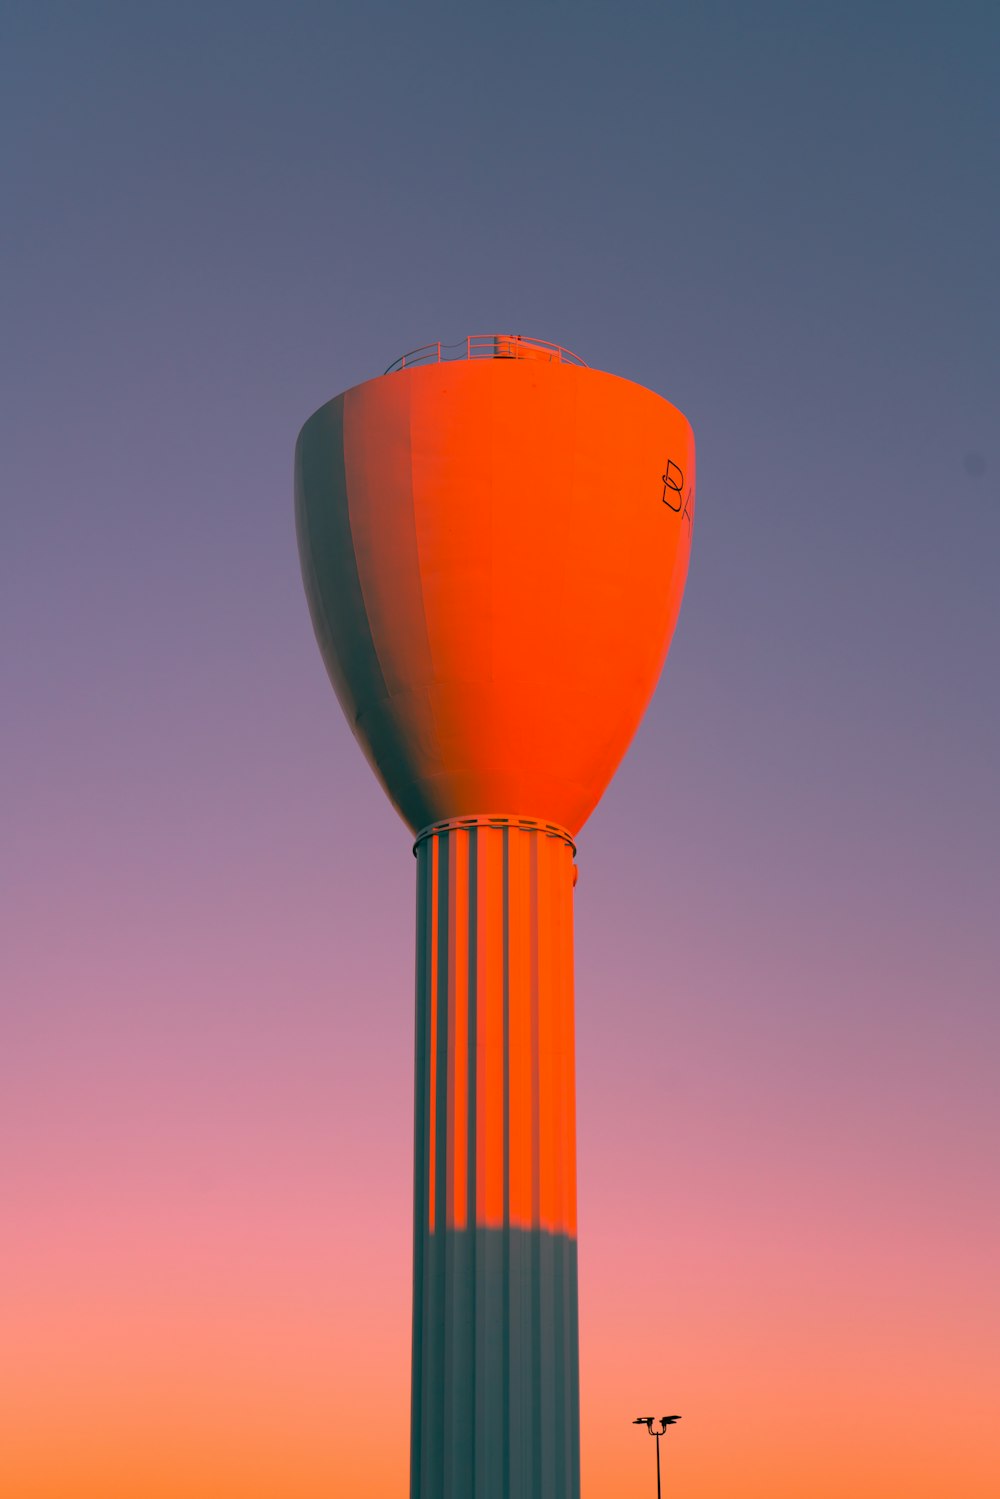 orange hot air balloon under blue sky during daytime